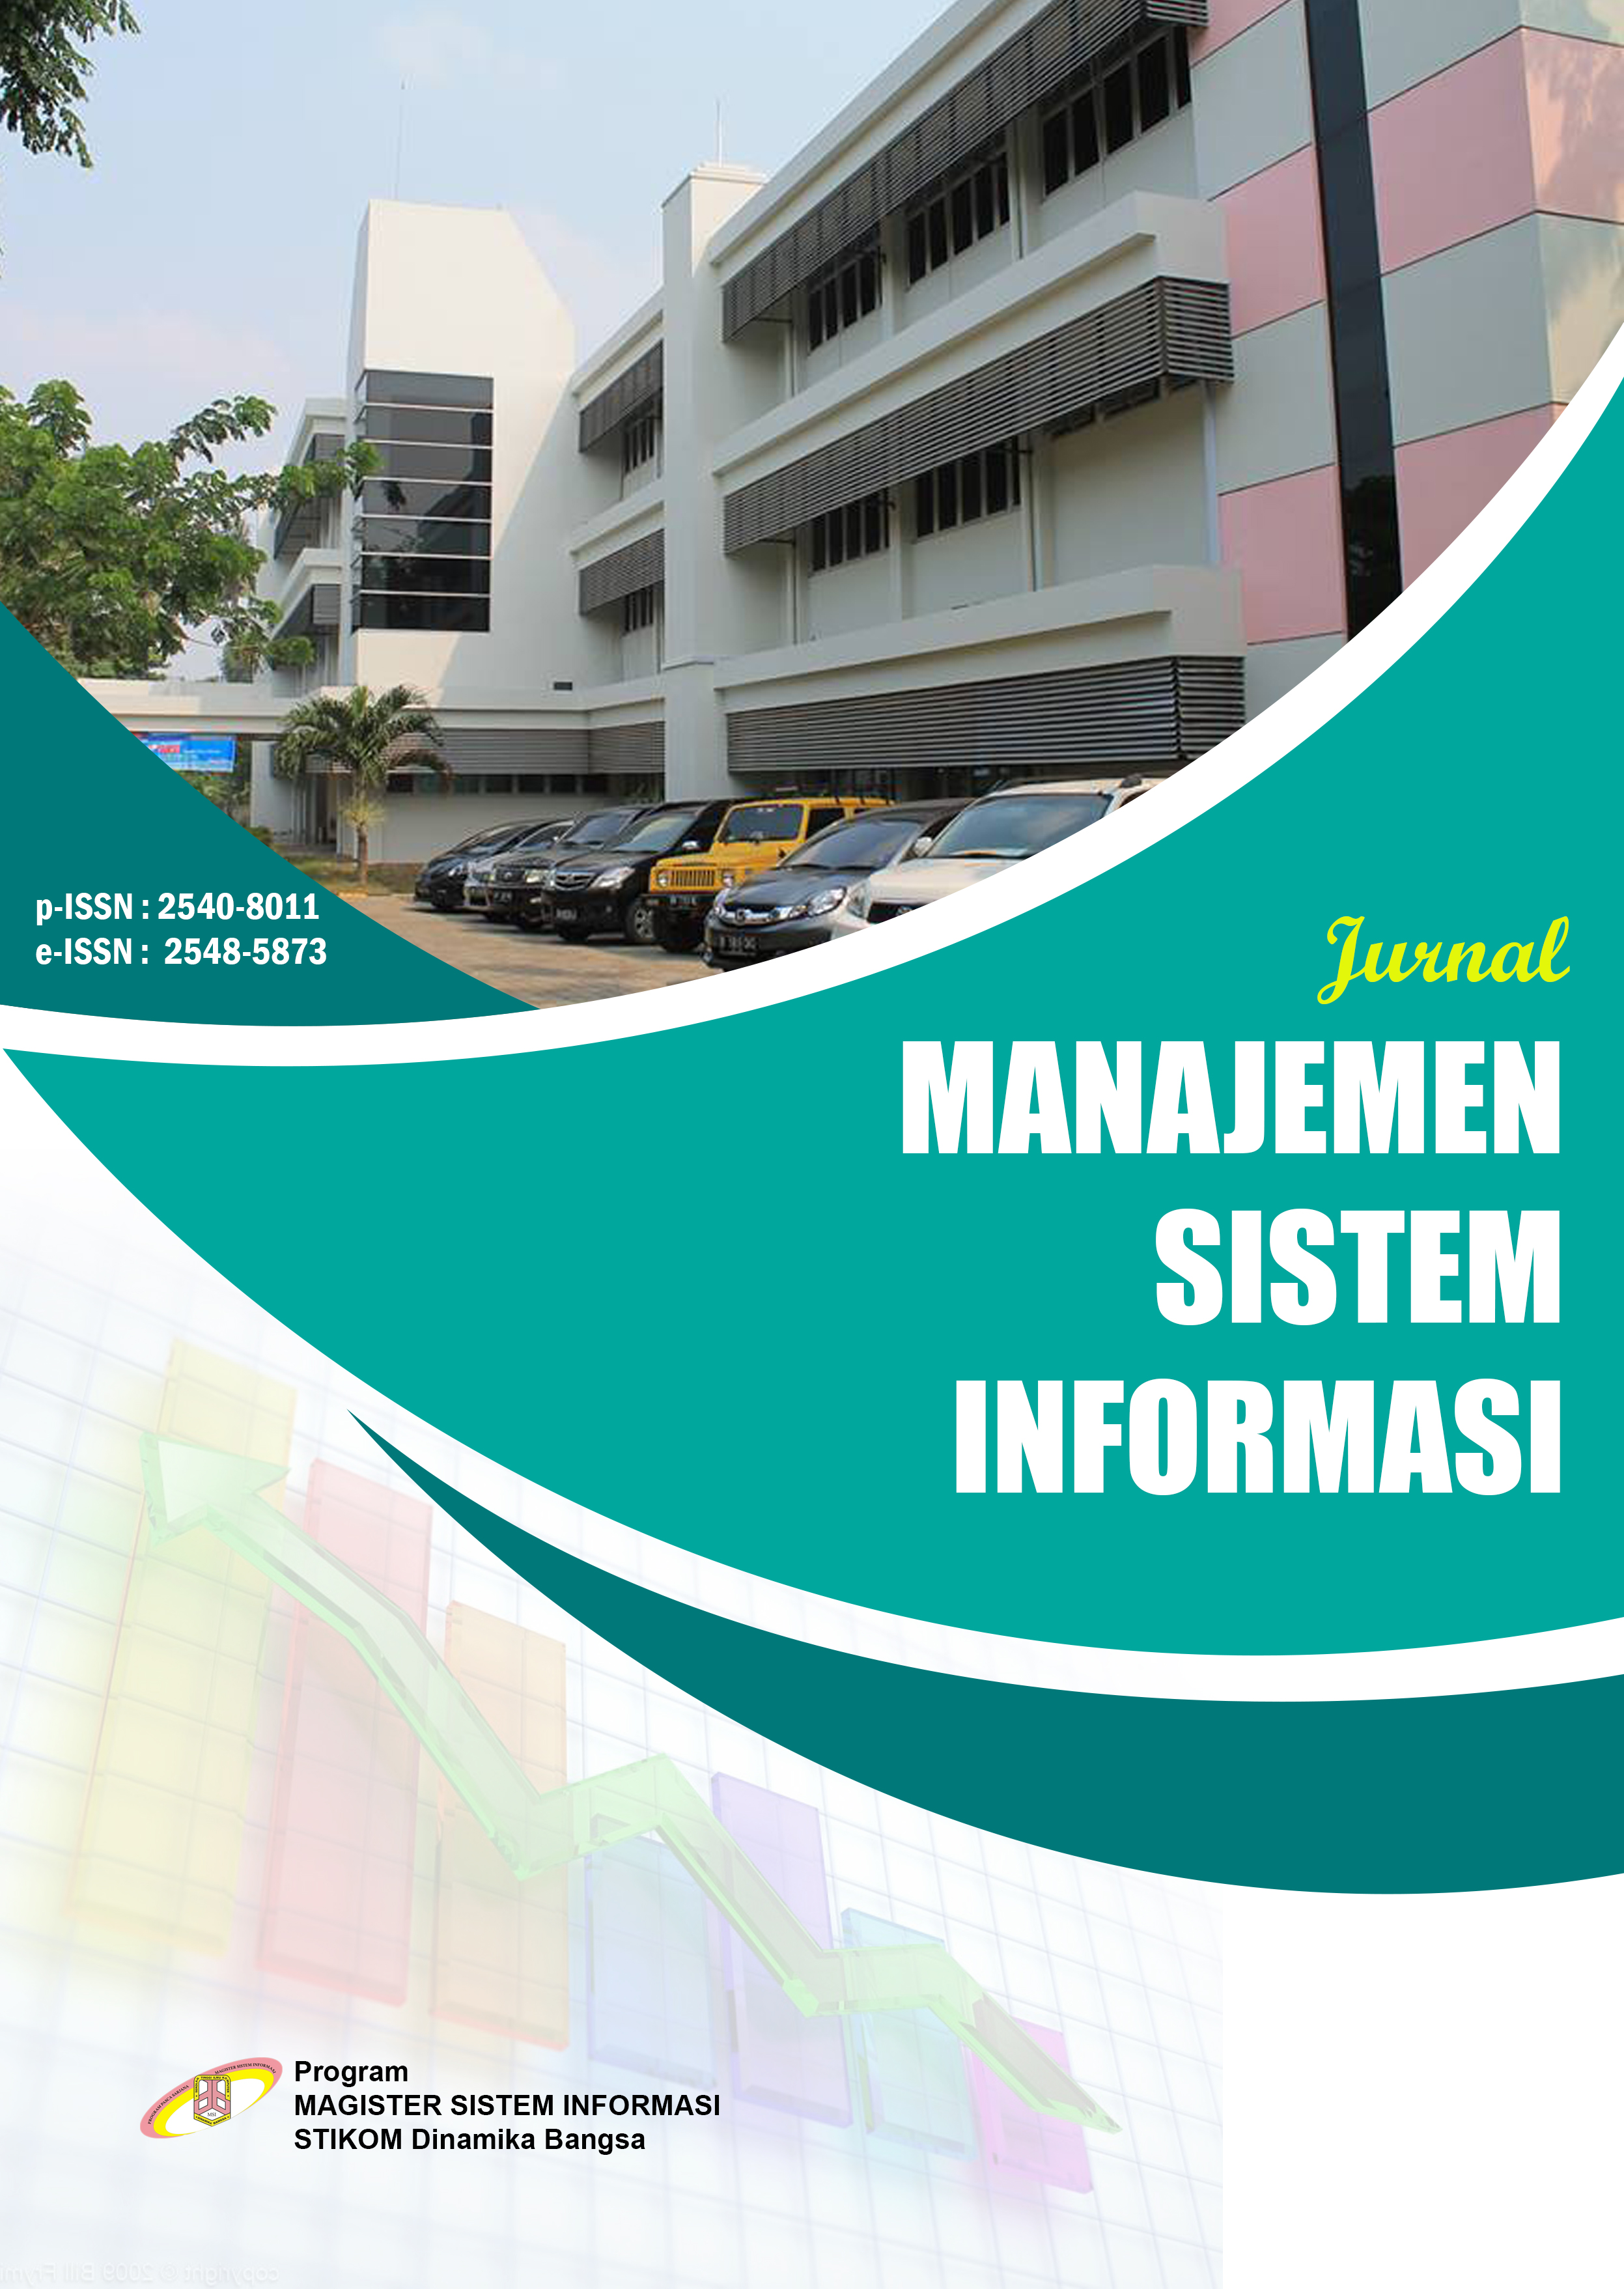 					Lihat Vol 4 No 3 (2019): Jurnal Manajemen Sistem Informasi
				